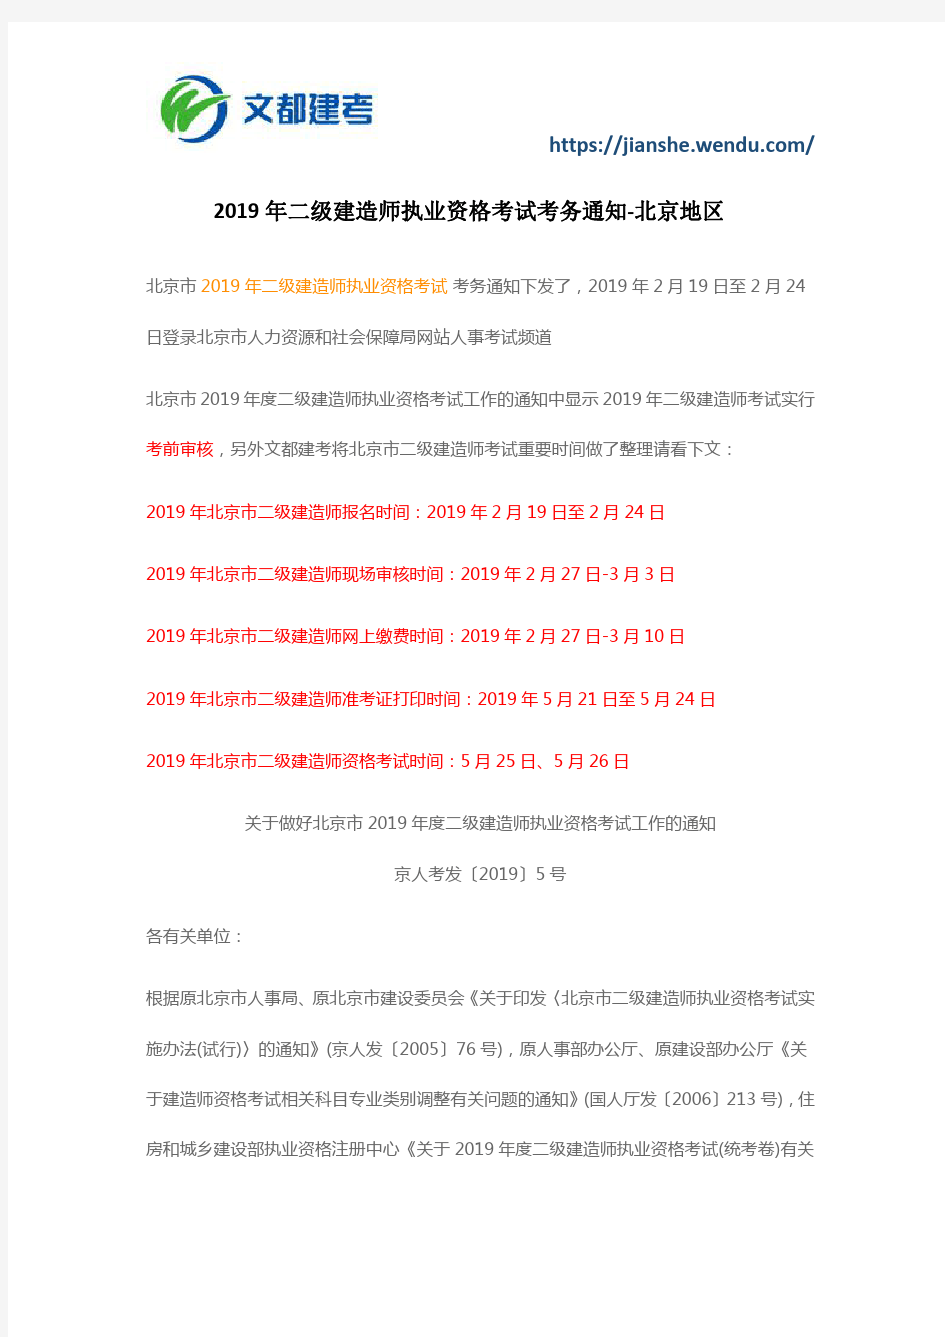 2019年二级建造师执业资格考试考务通知-北京地区